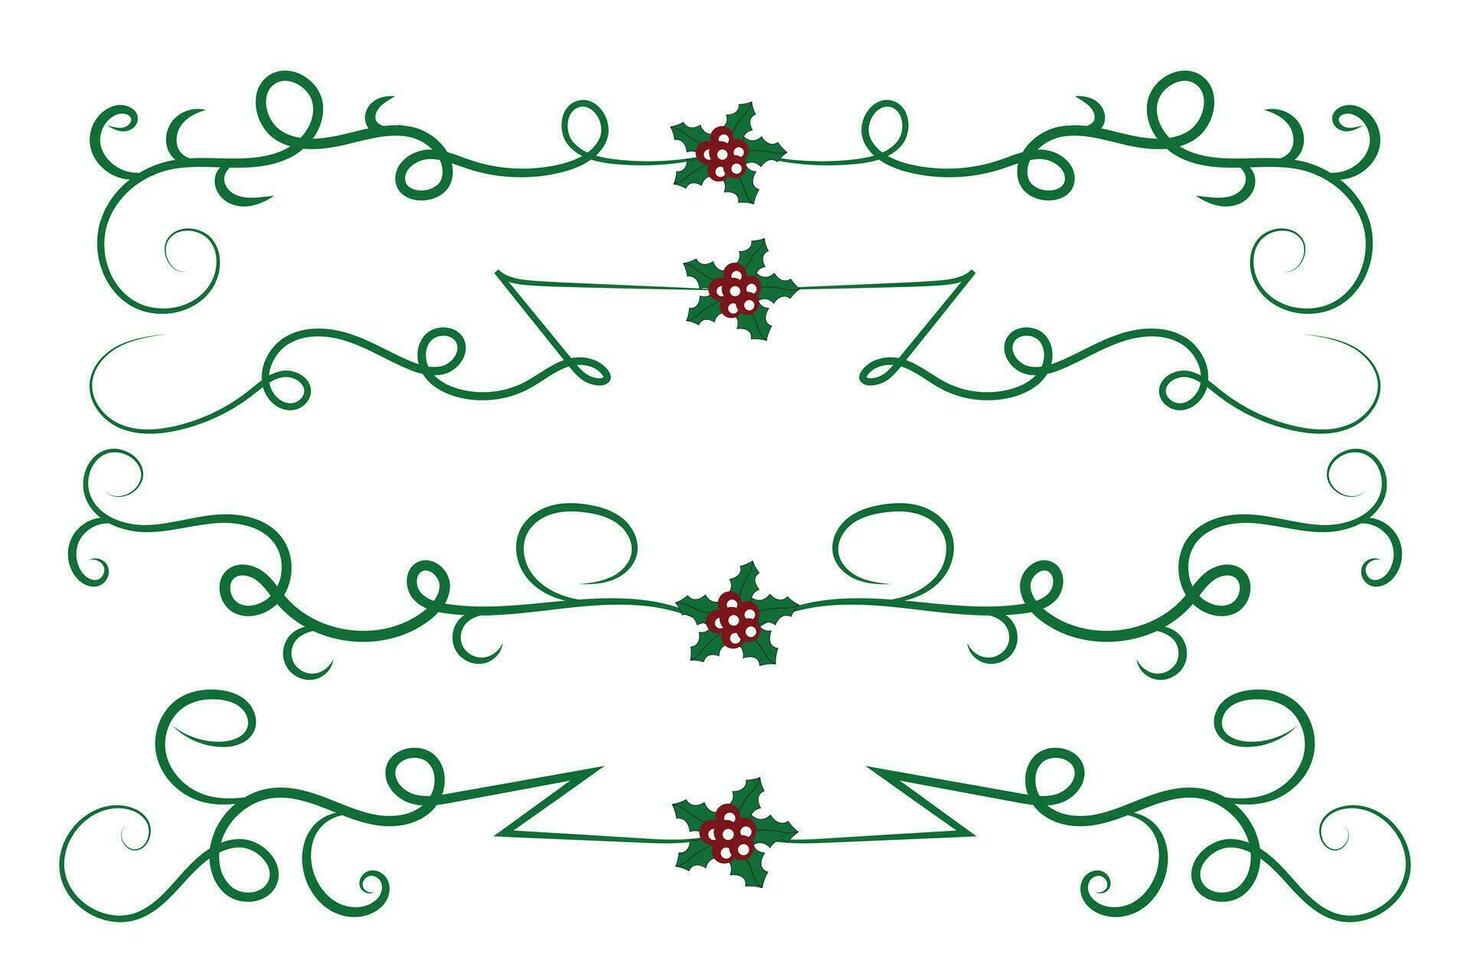 jul krusidullar virvlar avdelare rader dekorativ element, årgång kalligrafi skrolla glad jul text delare filigran elegant, vinter- järnek headers fint separator grön sida dekor vektor